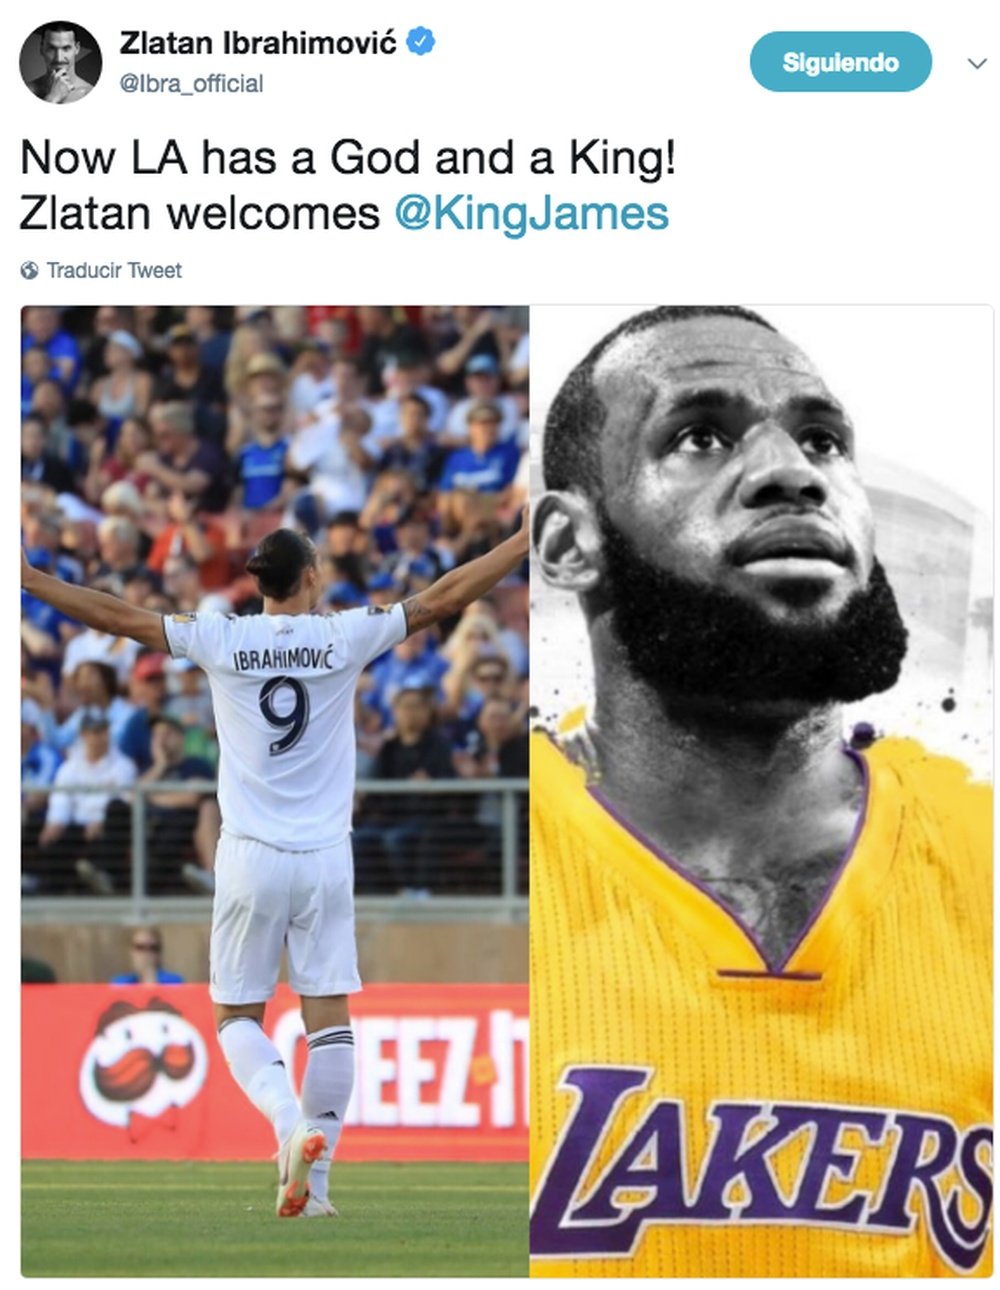 Le Dieu souhaite la bienvenue au Roi. Twitter/ibra-official